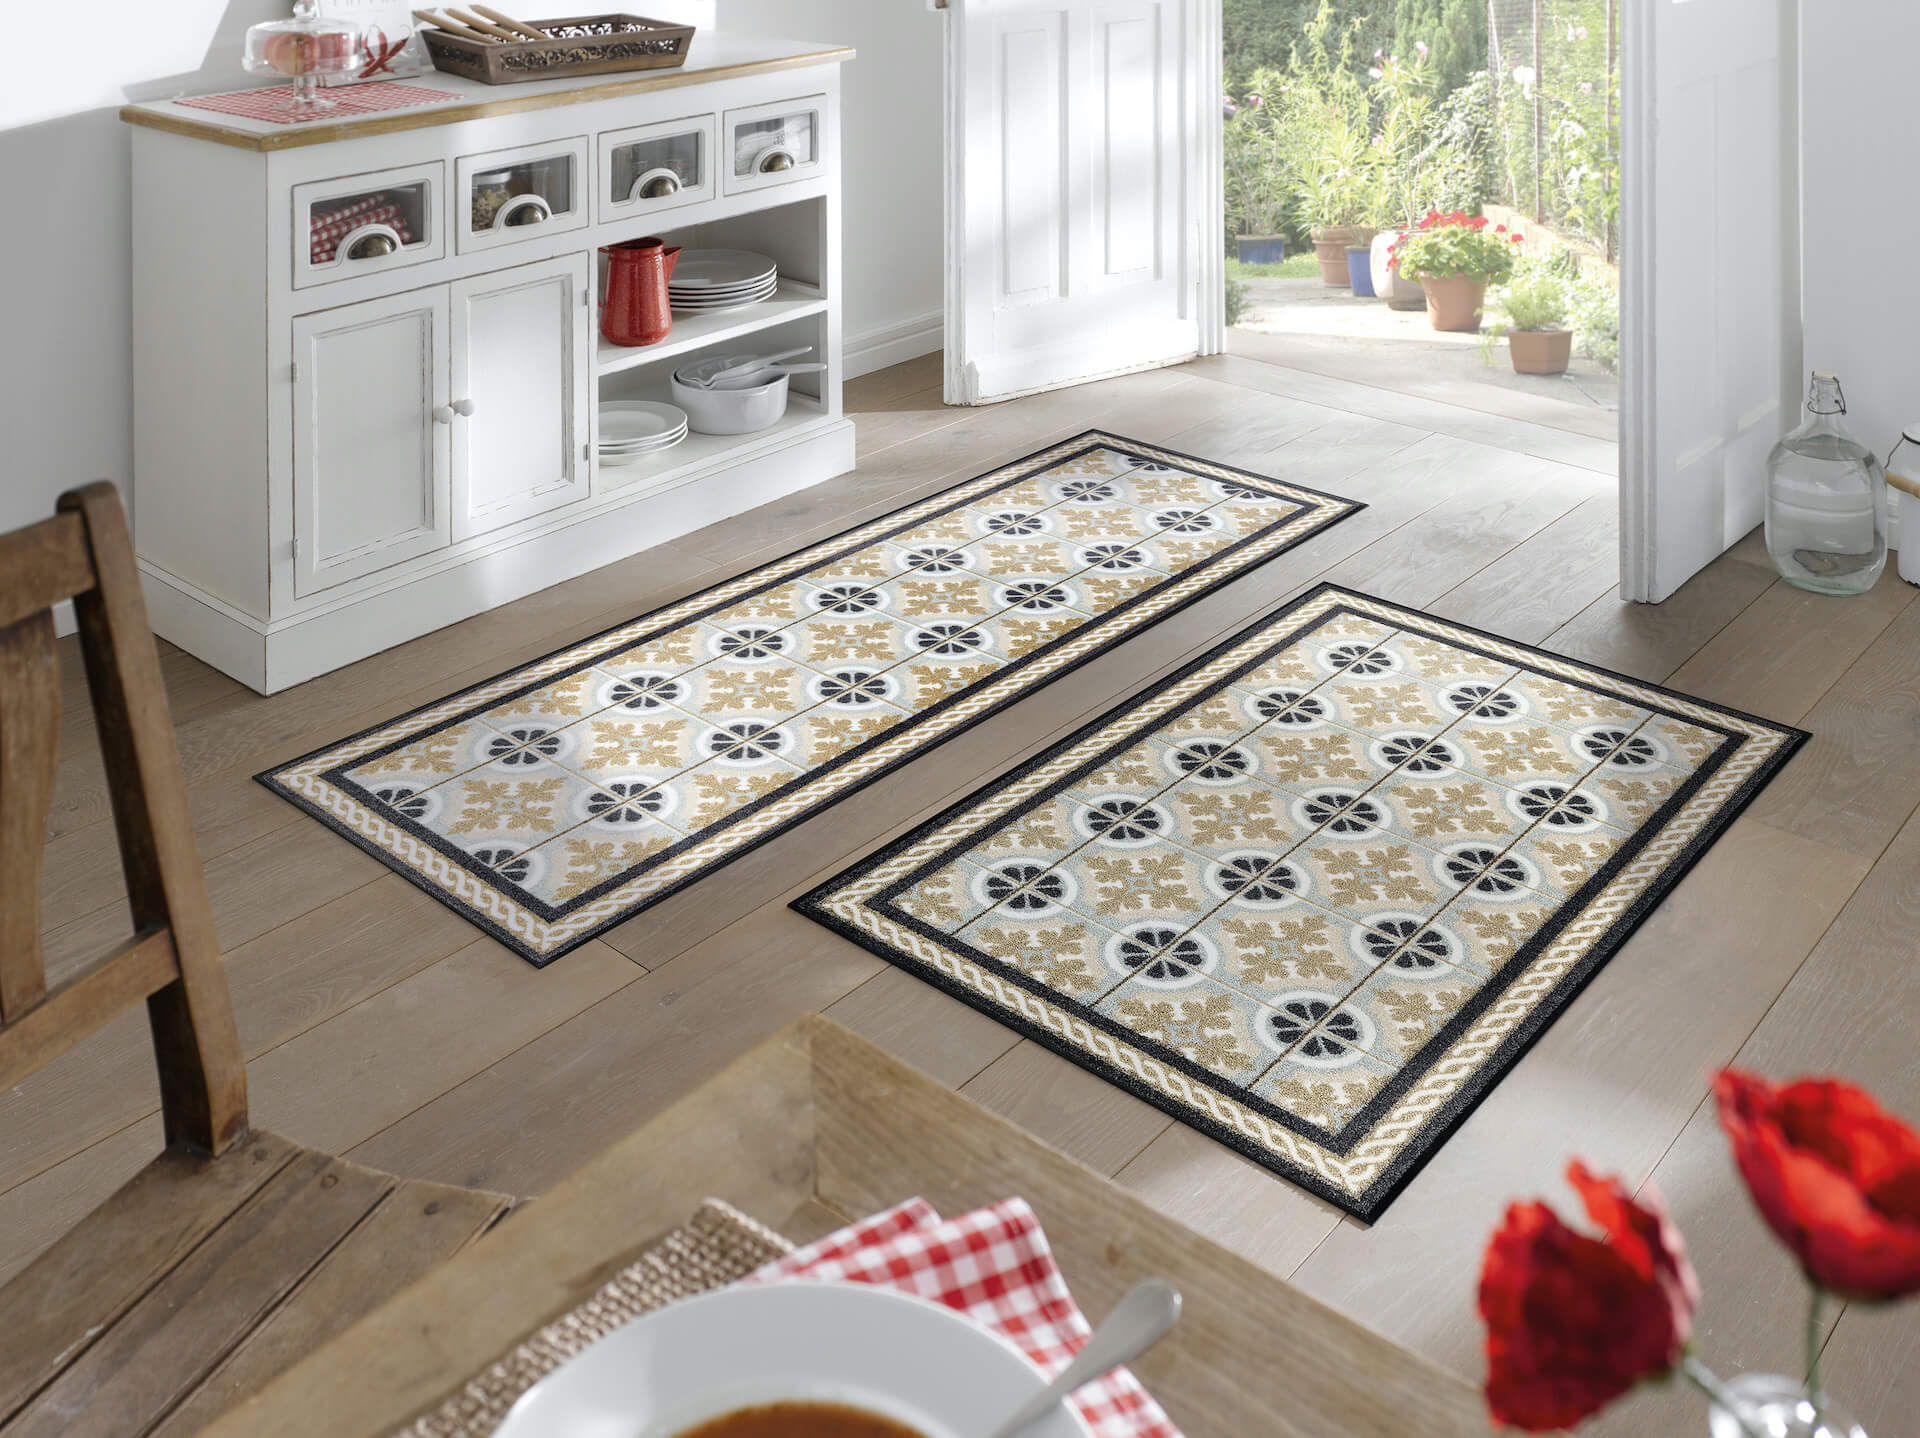 Küchenmatte Kitchen Tiles, Wash & Dry im Mosaikdesign, 75 x 190 cm, Interieurbild